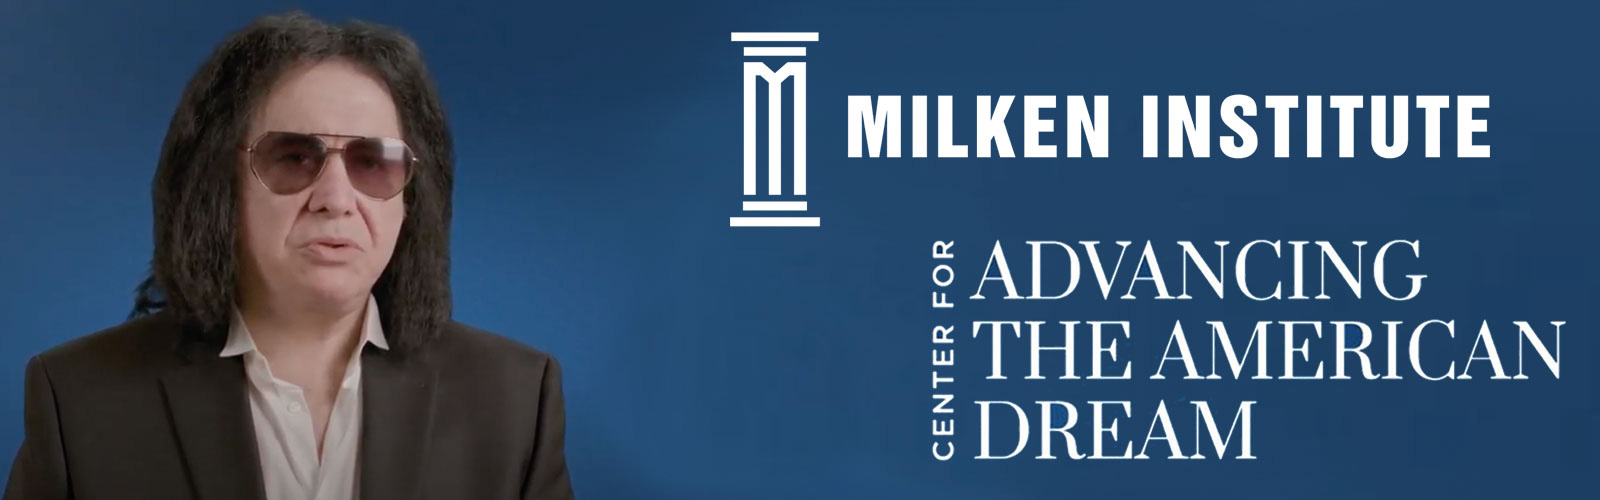 Milken Institute - American Dream